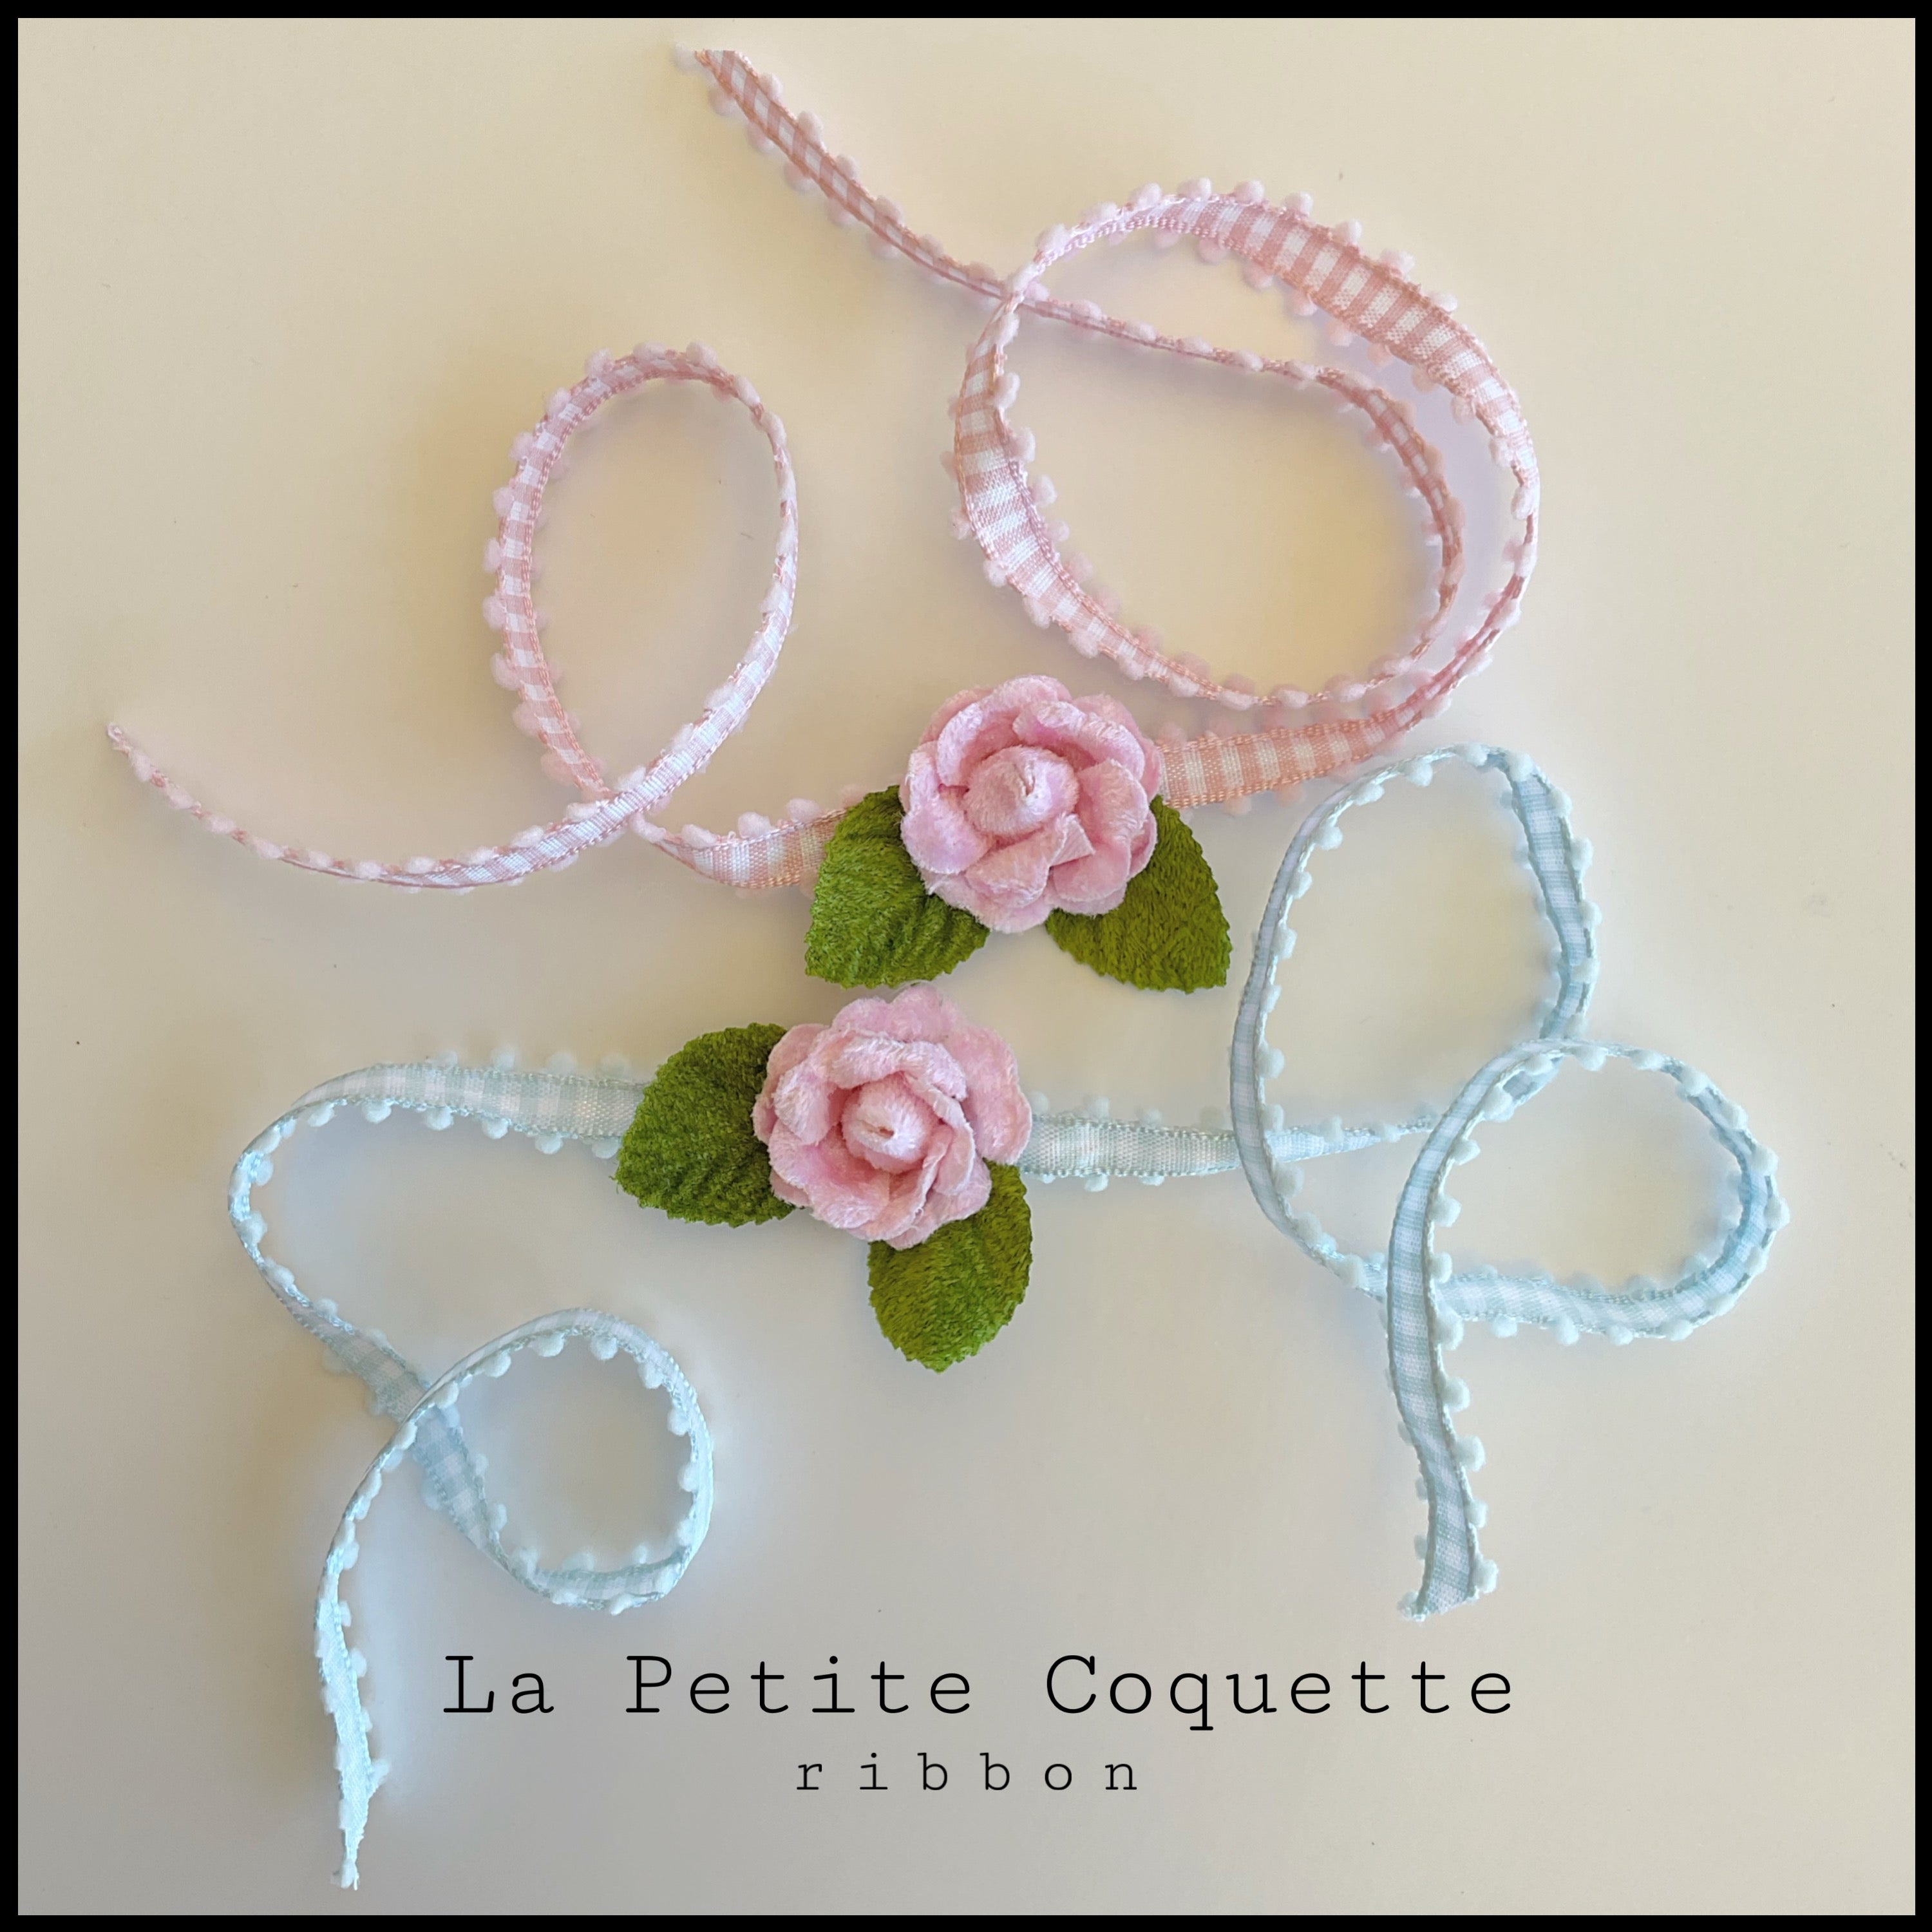 La Petite Coquette Ribbon – Fiori Couture